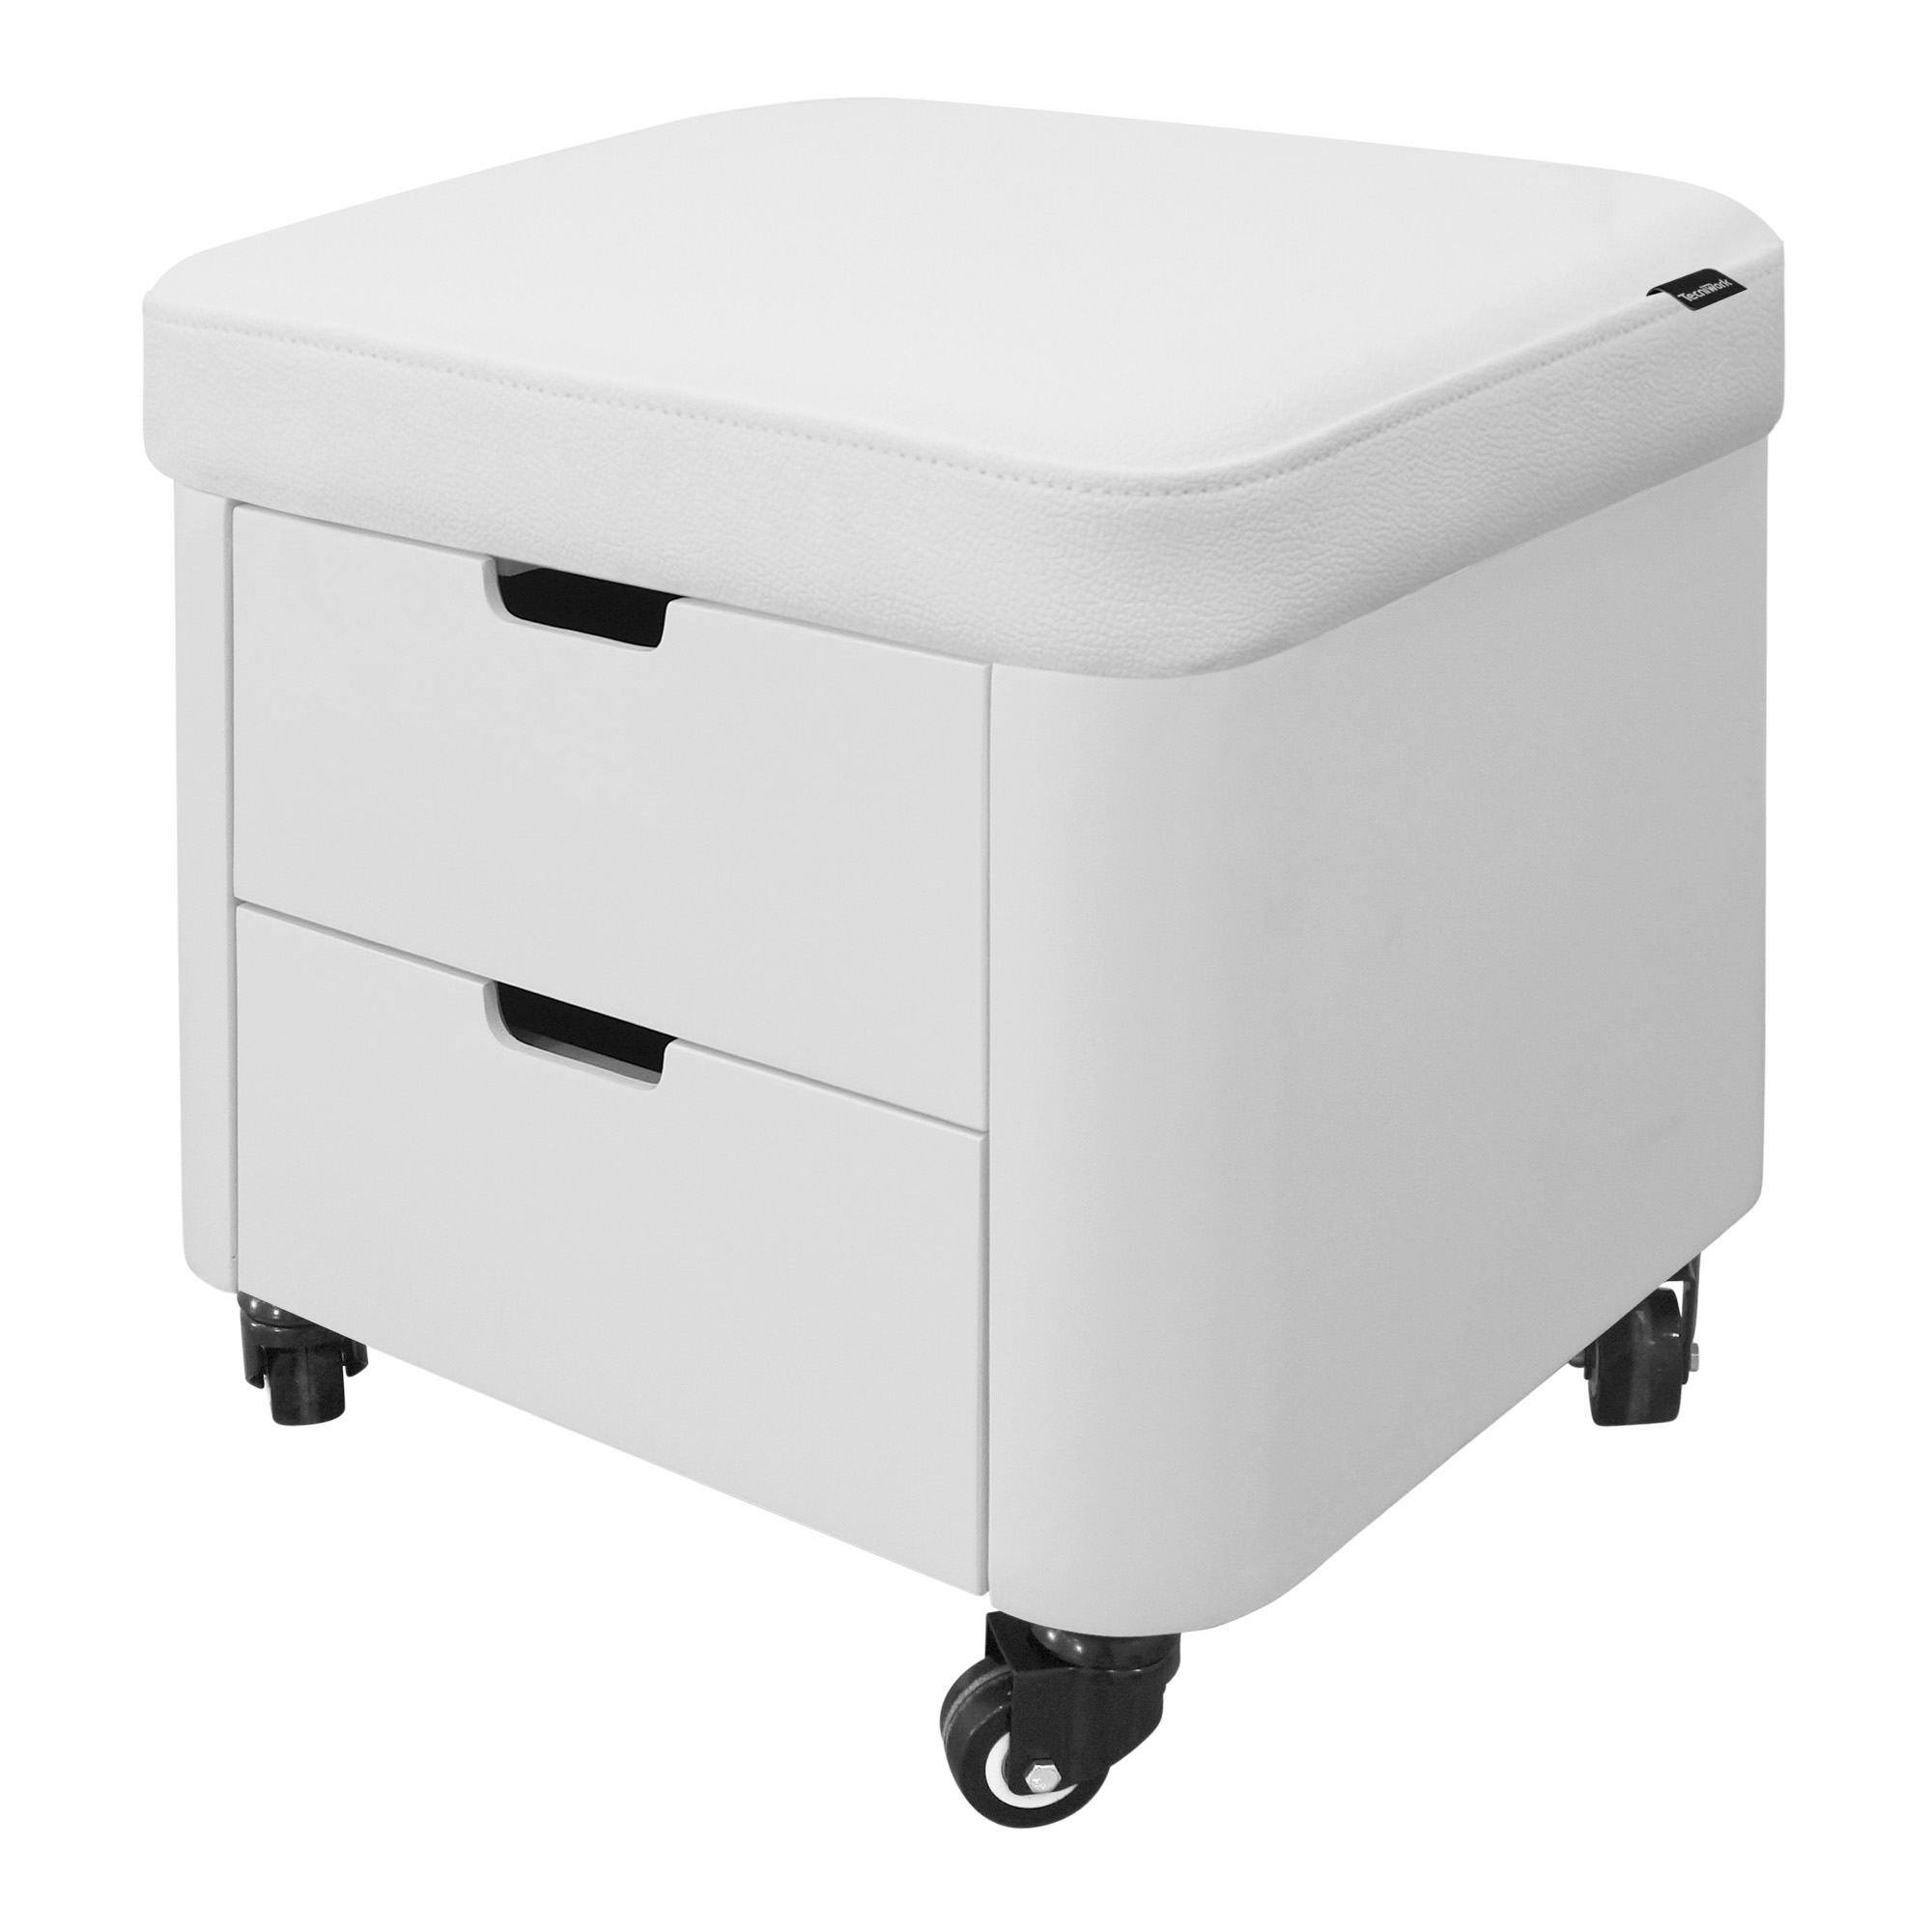 MAM multi-purpose stool with drawers